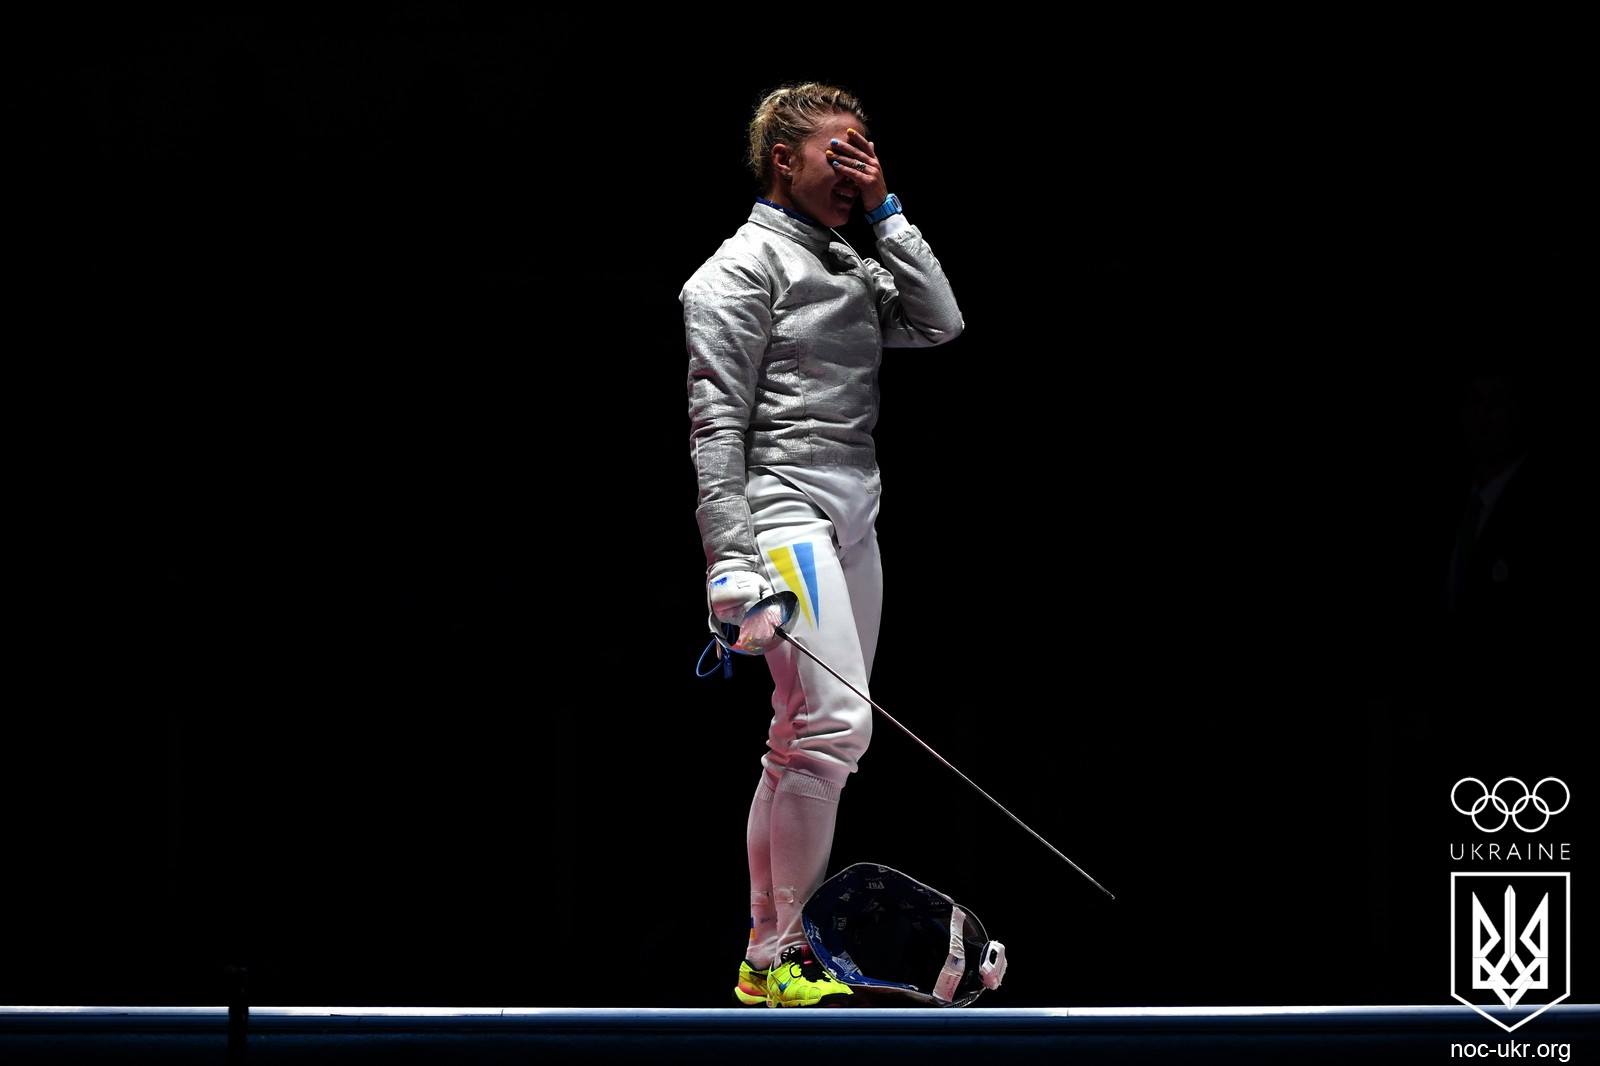 Эмоциональная «бронза» украинки на Олимпиаде в Рио - как это было